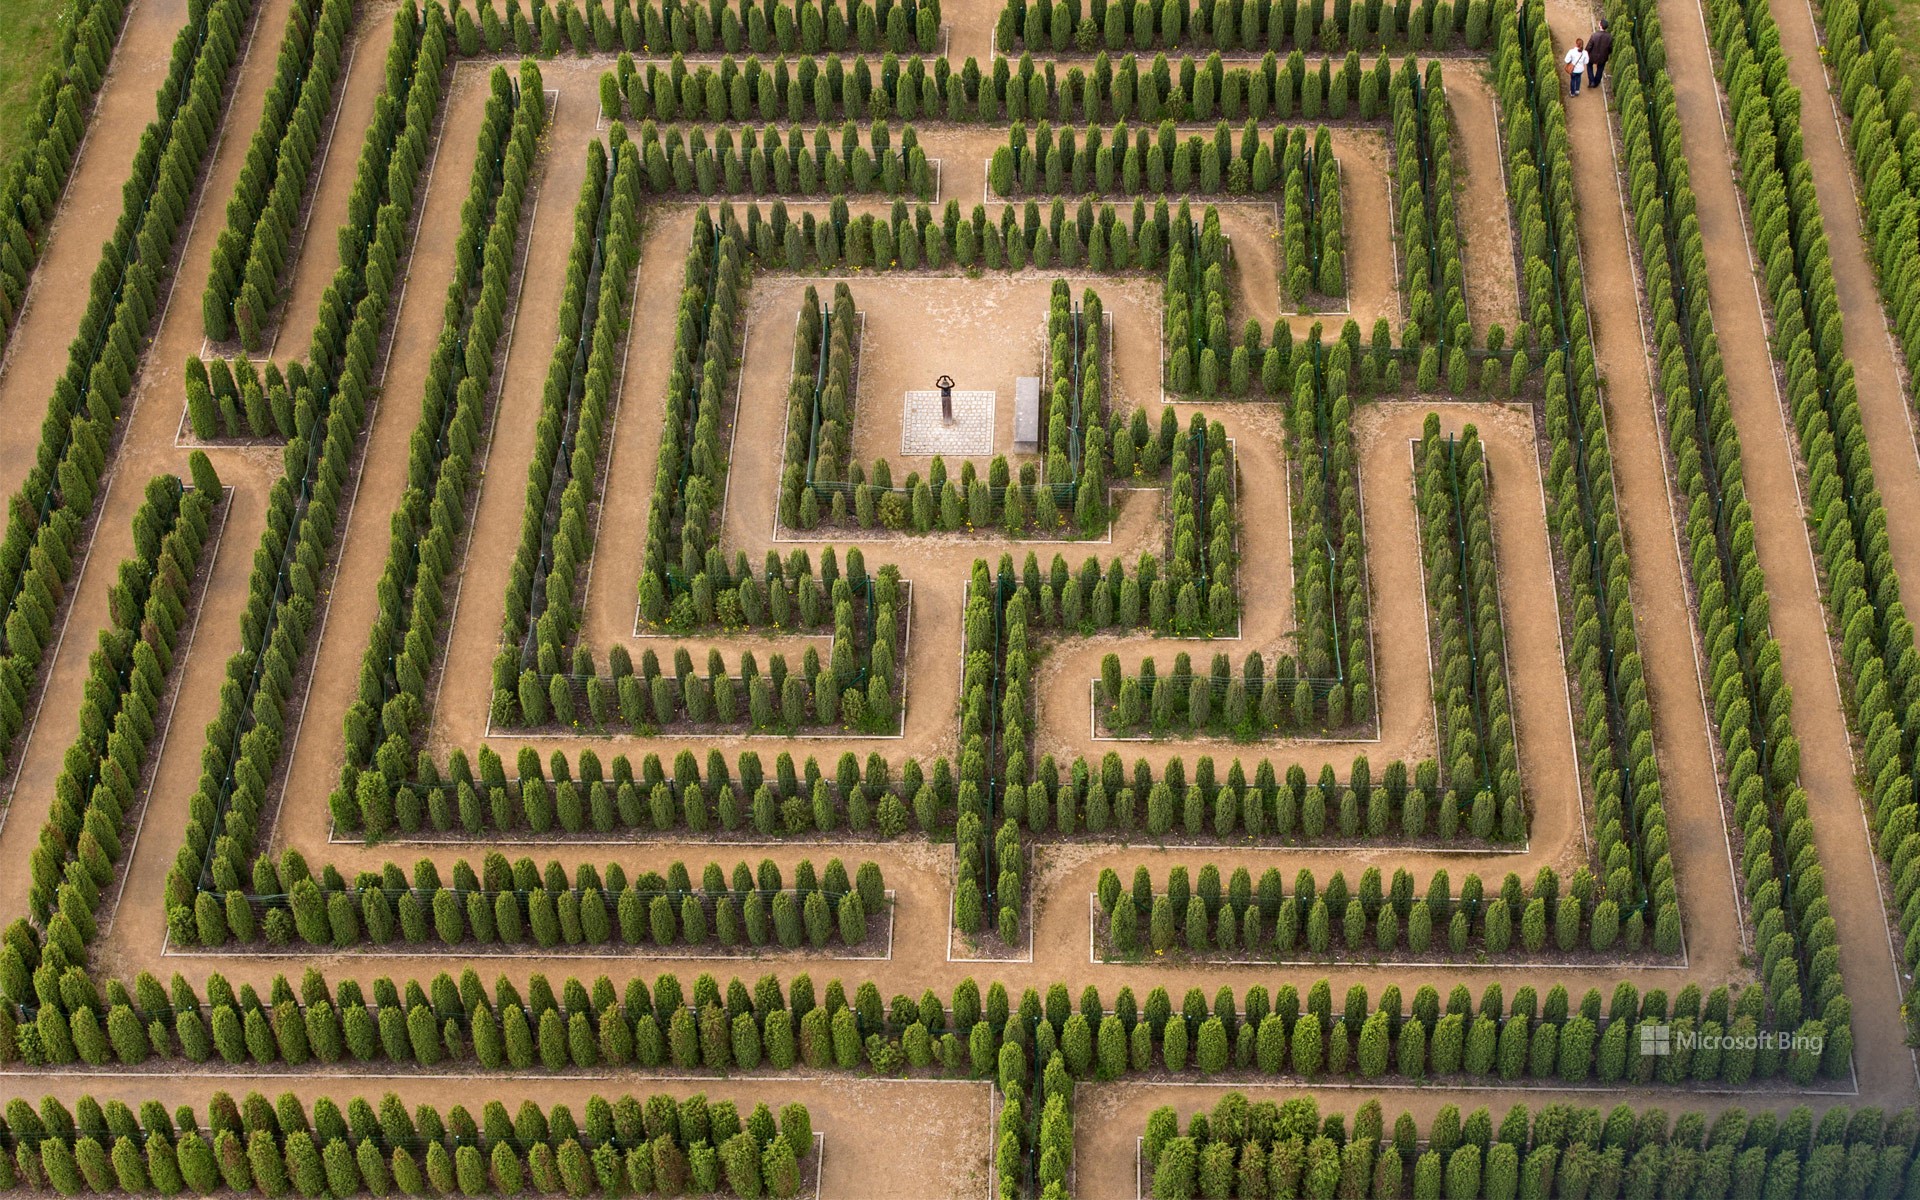 Maze in the adventure park Teichland, Brandenburg